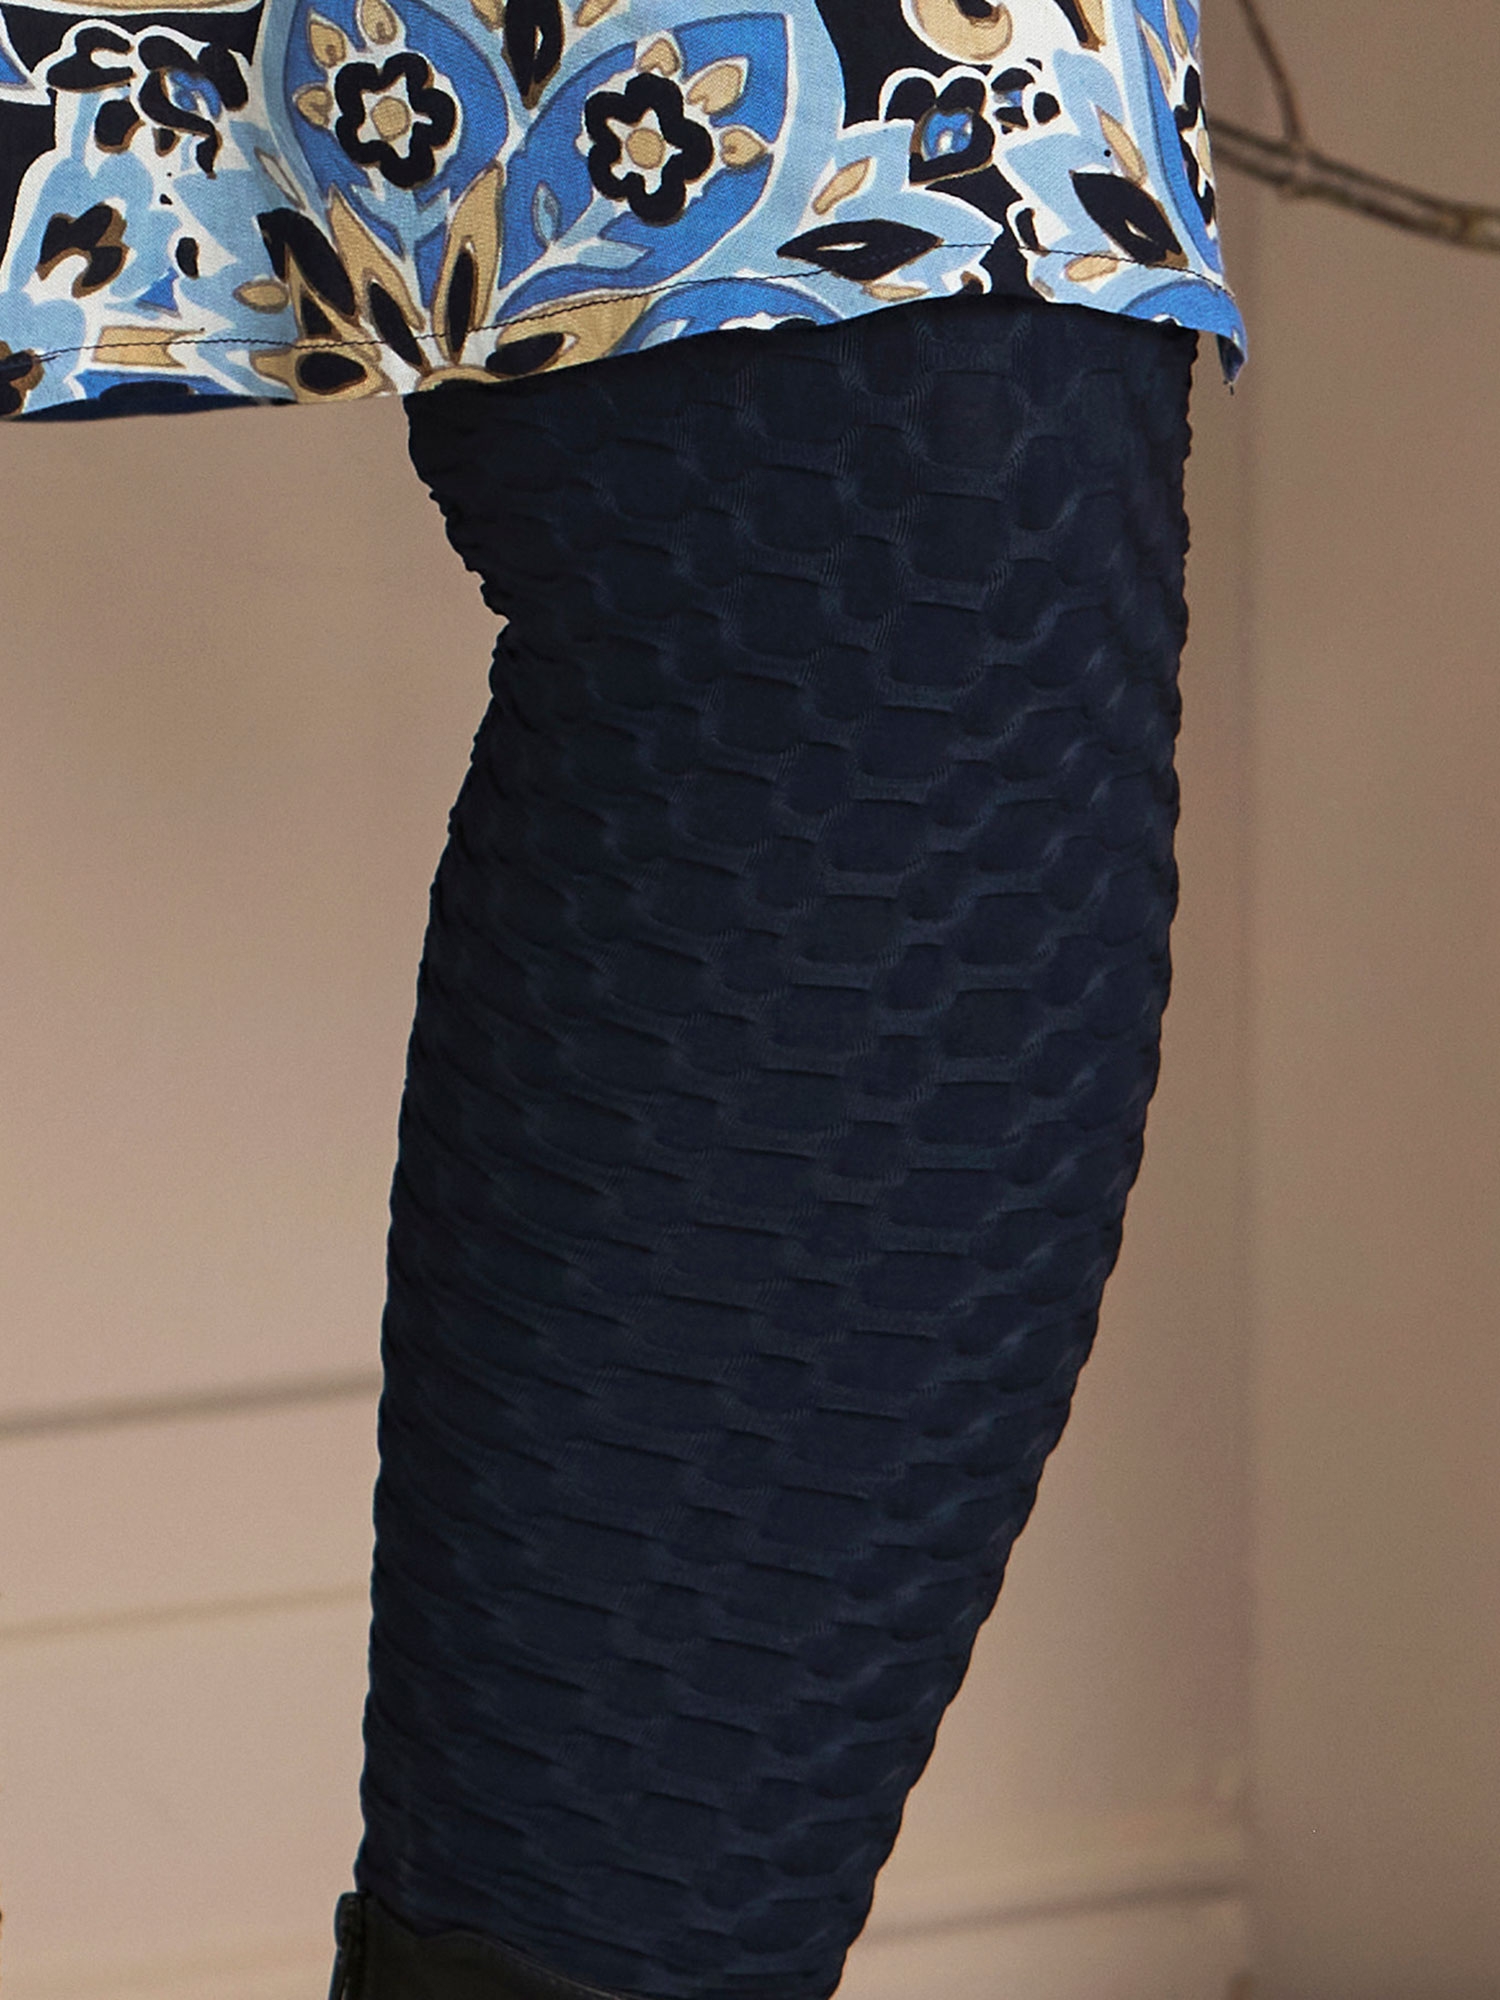  ROMY - Marineblå stretch leggings med 3-D struktur fra Zhenzi